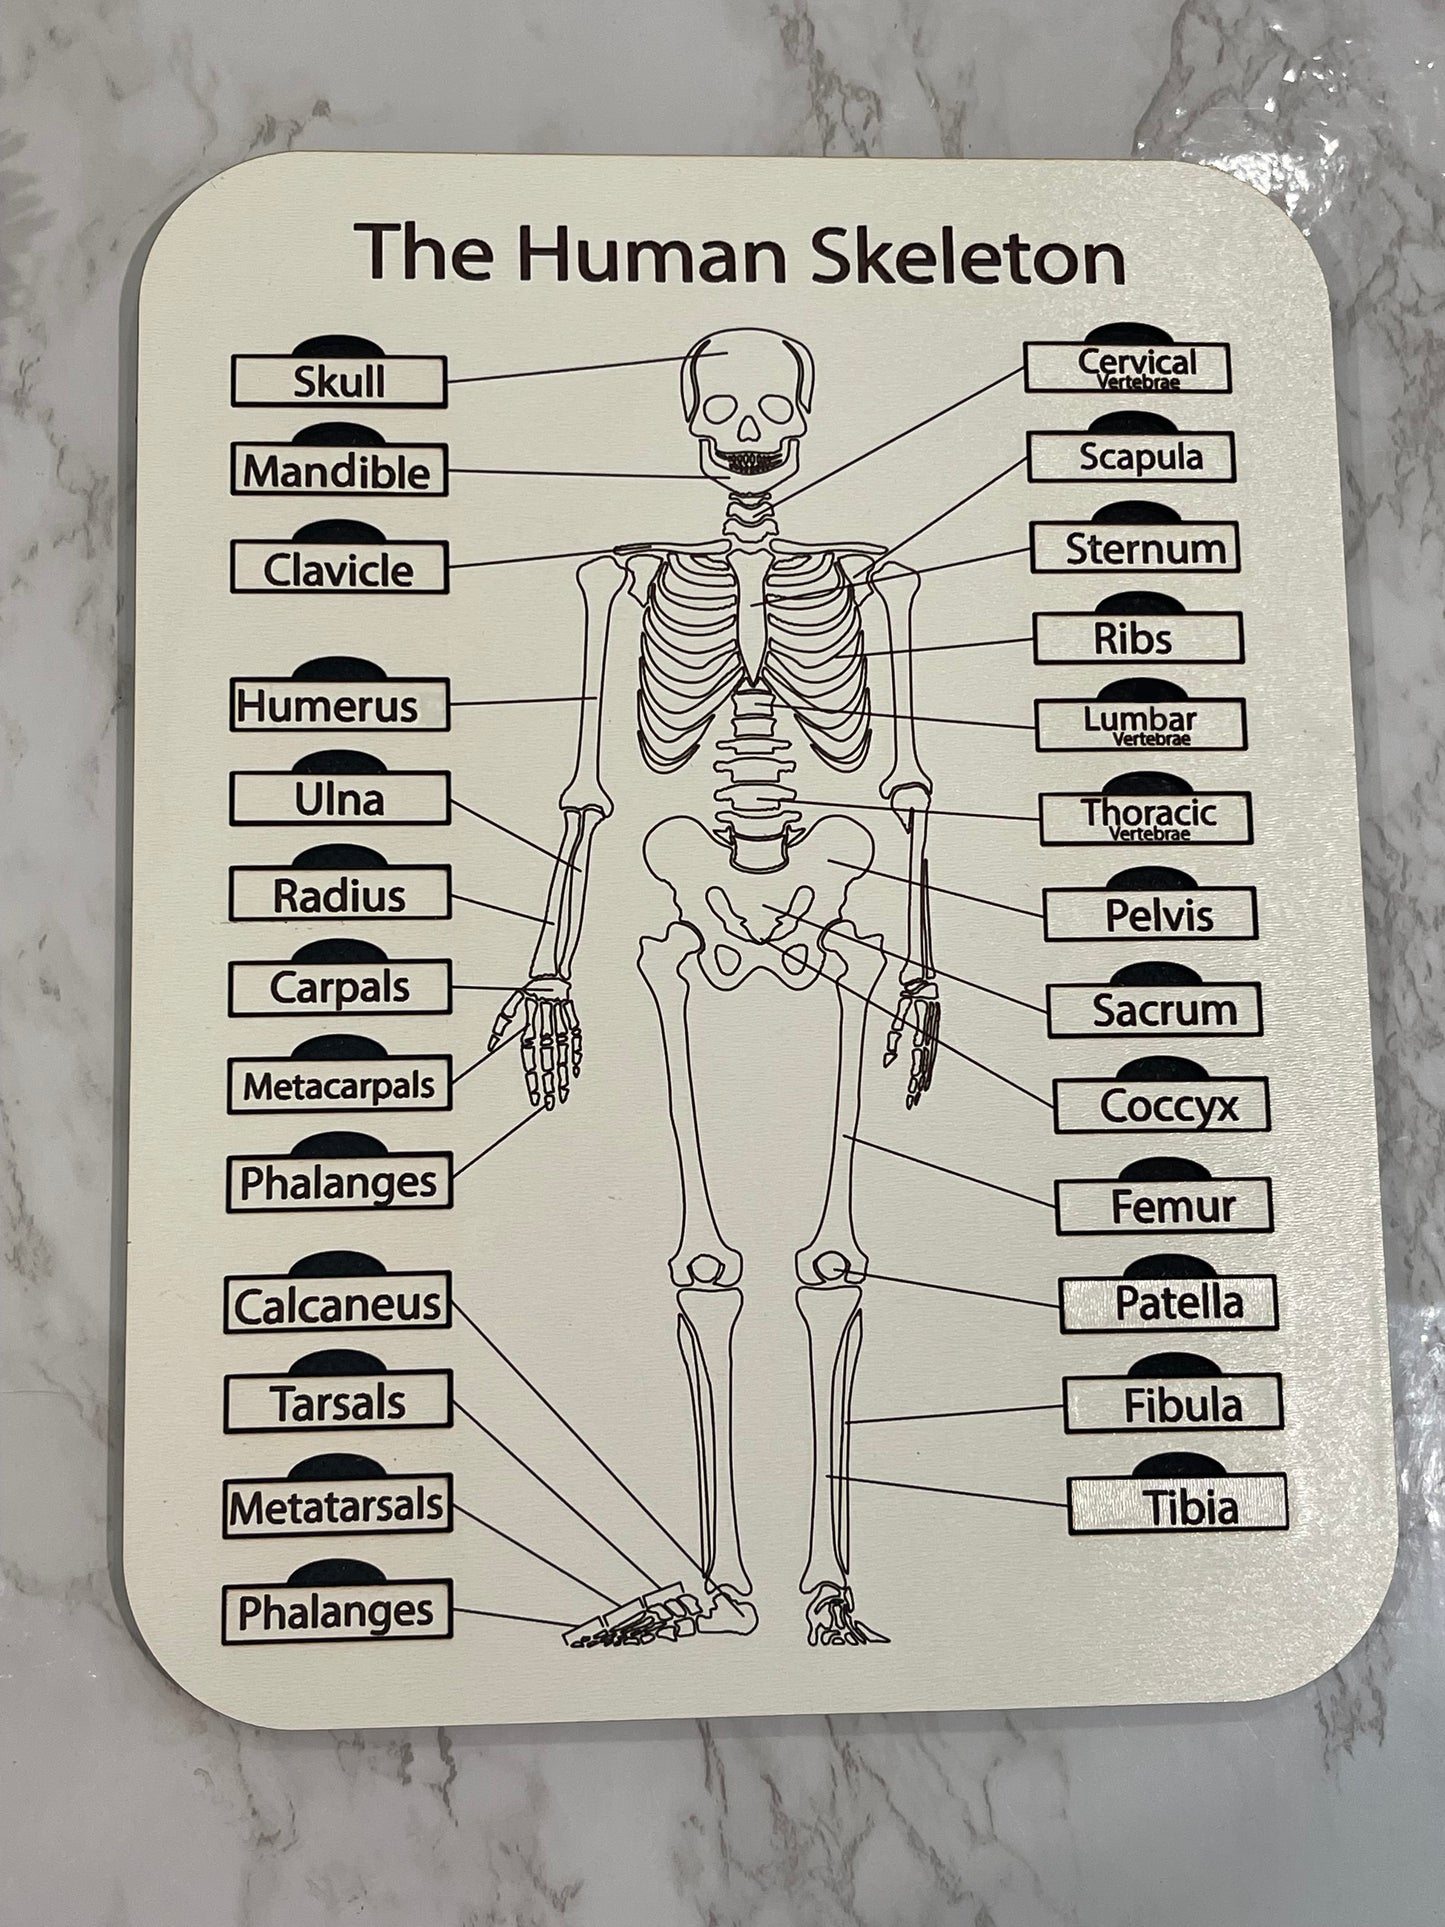 The Human Skeleton